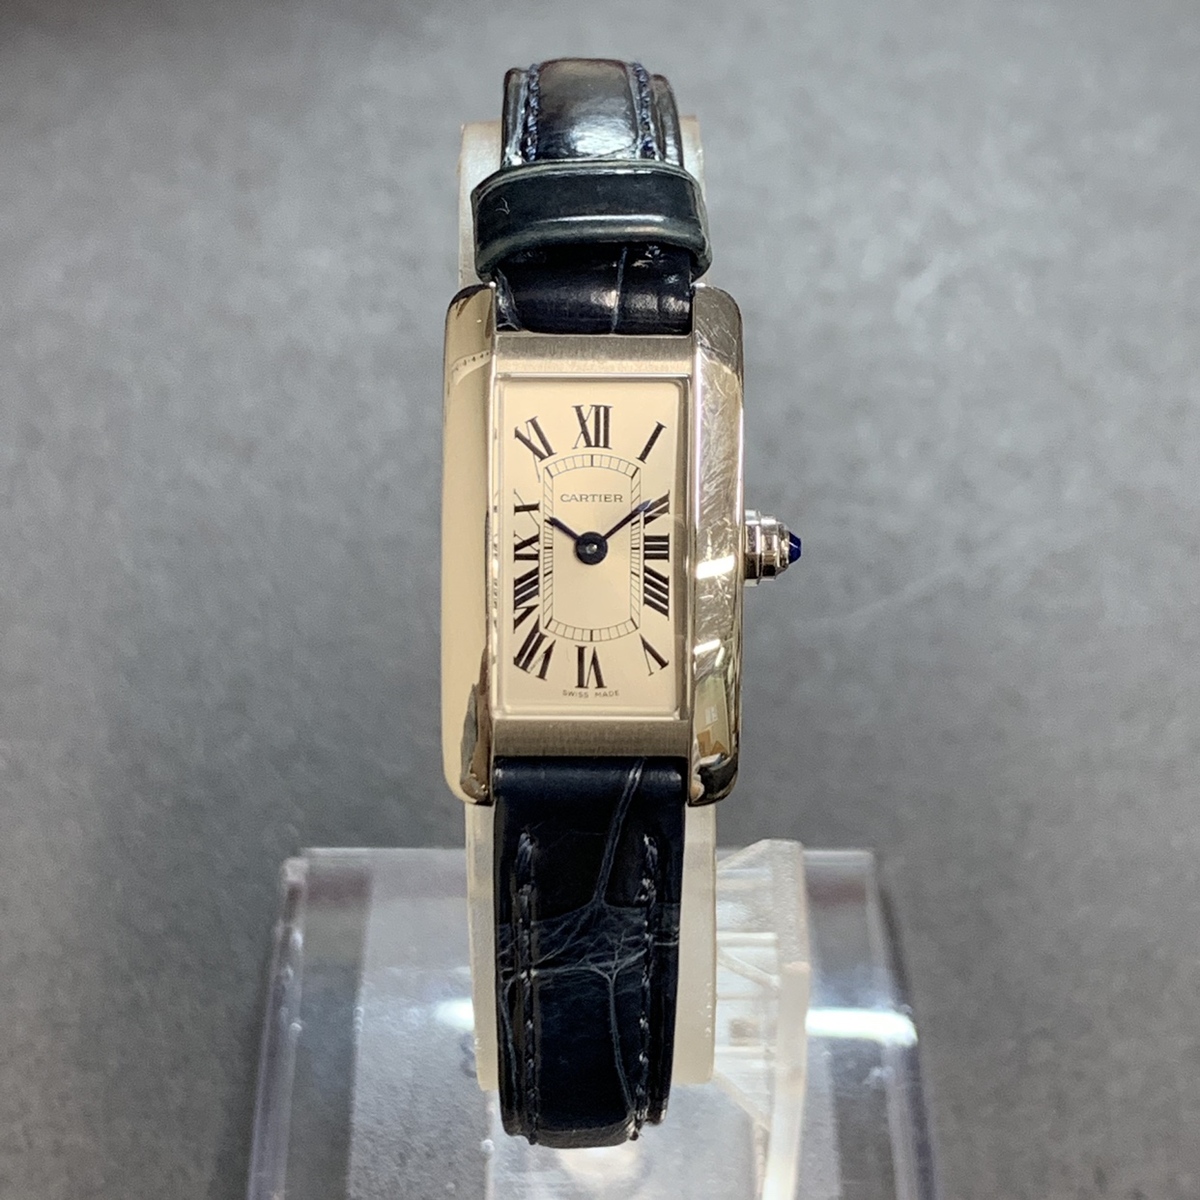 エコスタイル銀座本店で、カルティエのタンクアメリカンのミニのクロコレザーベルトの時計を買取ました。 買取価格・実績 2019年8月30日公開